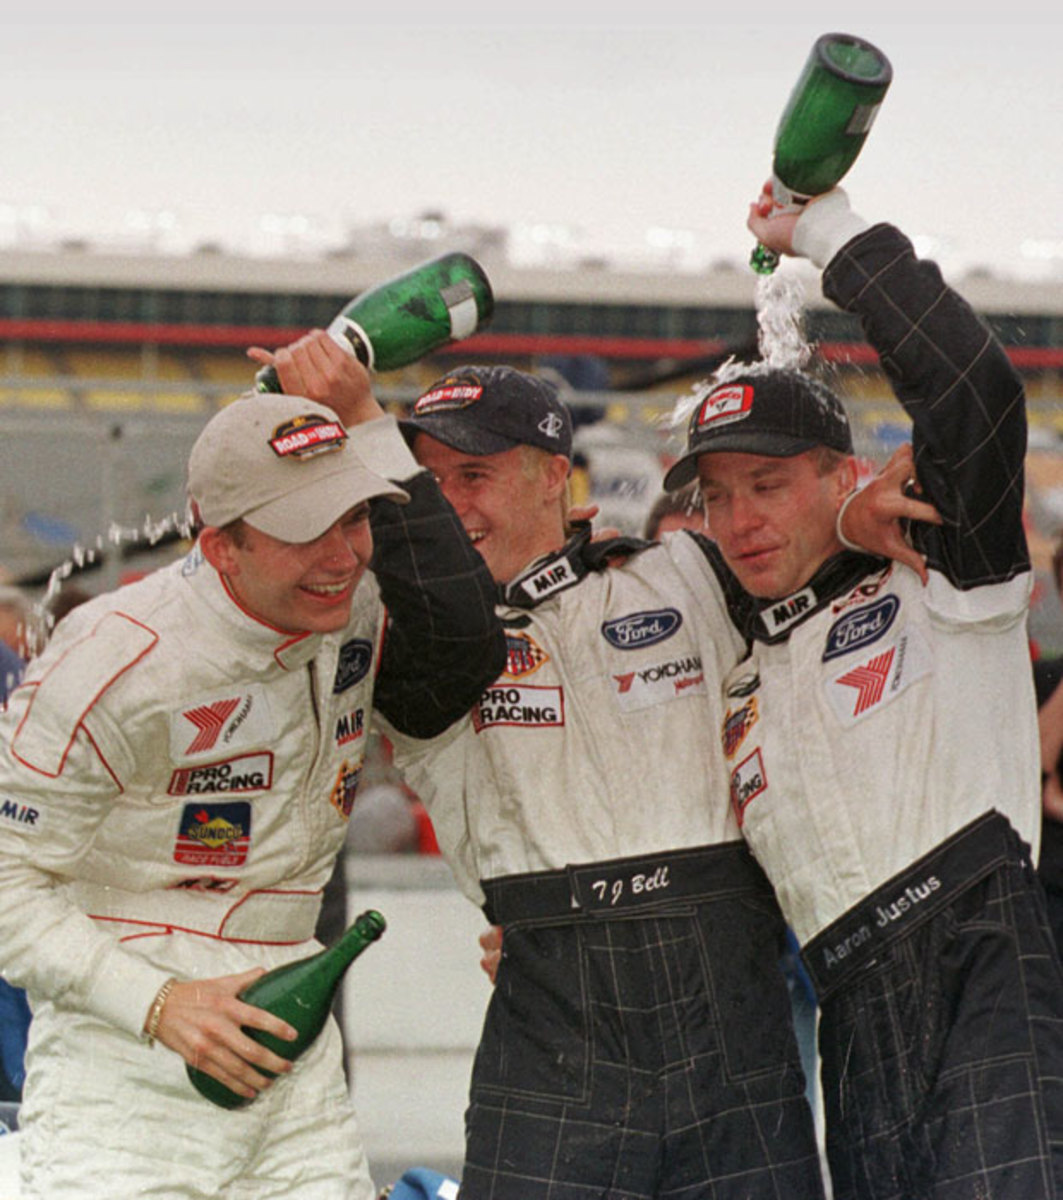 Winning the U.S. F2000 championship